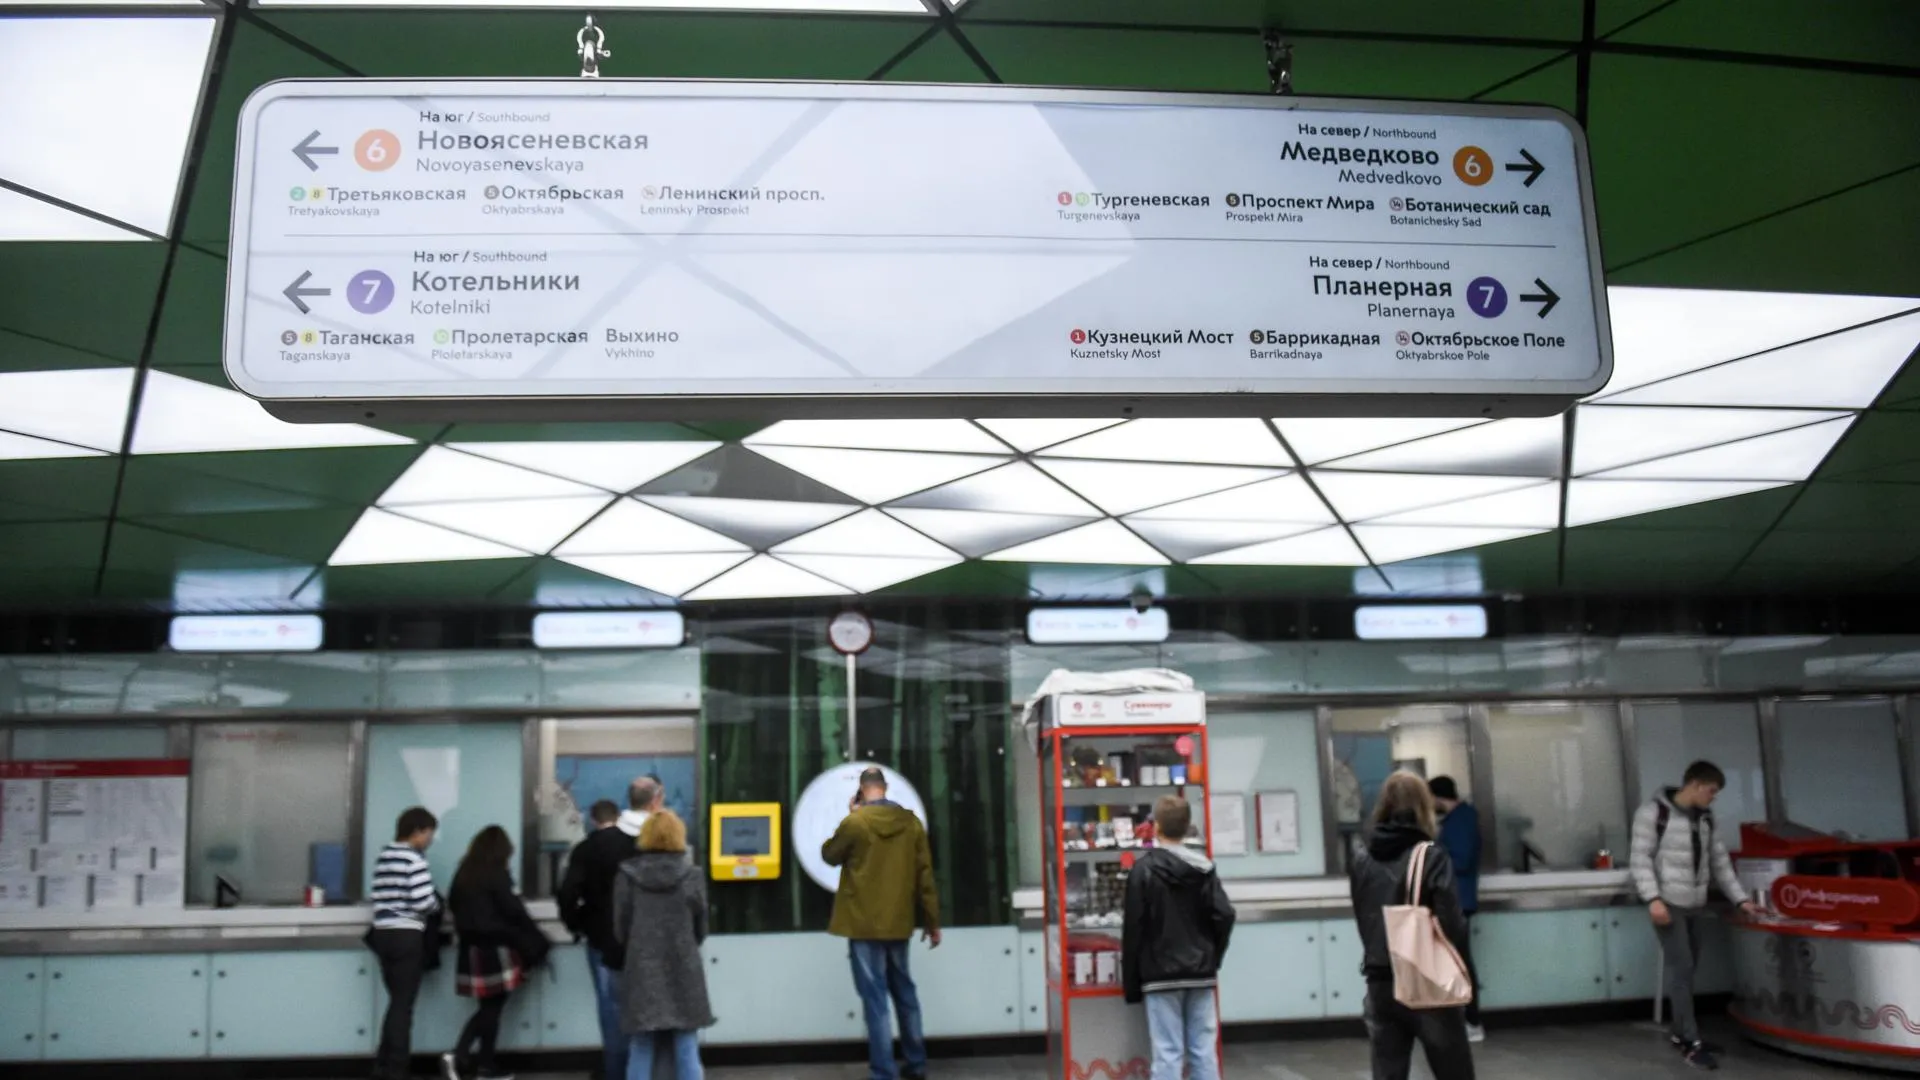 Уехала не туда: почему москвичам не нравится новая навигация в метро